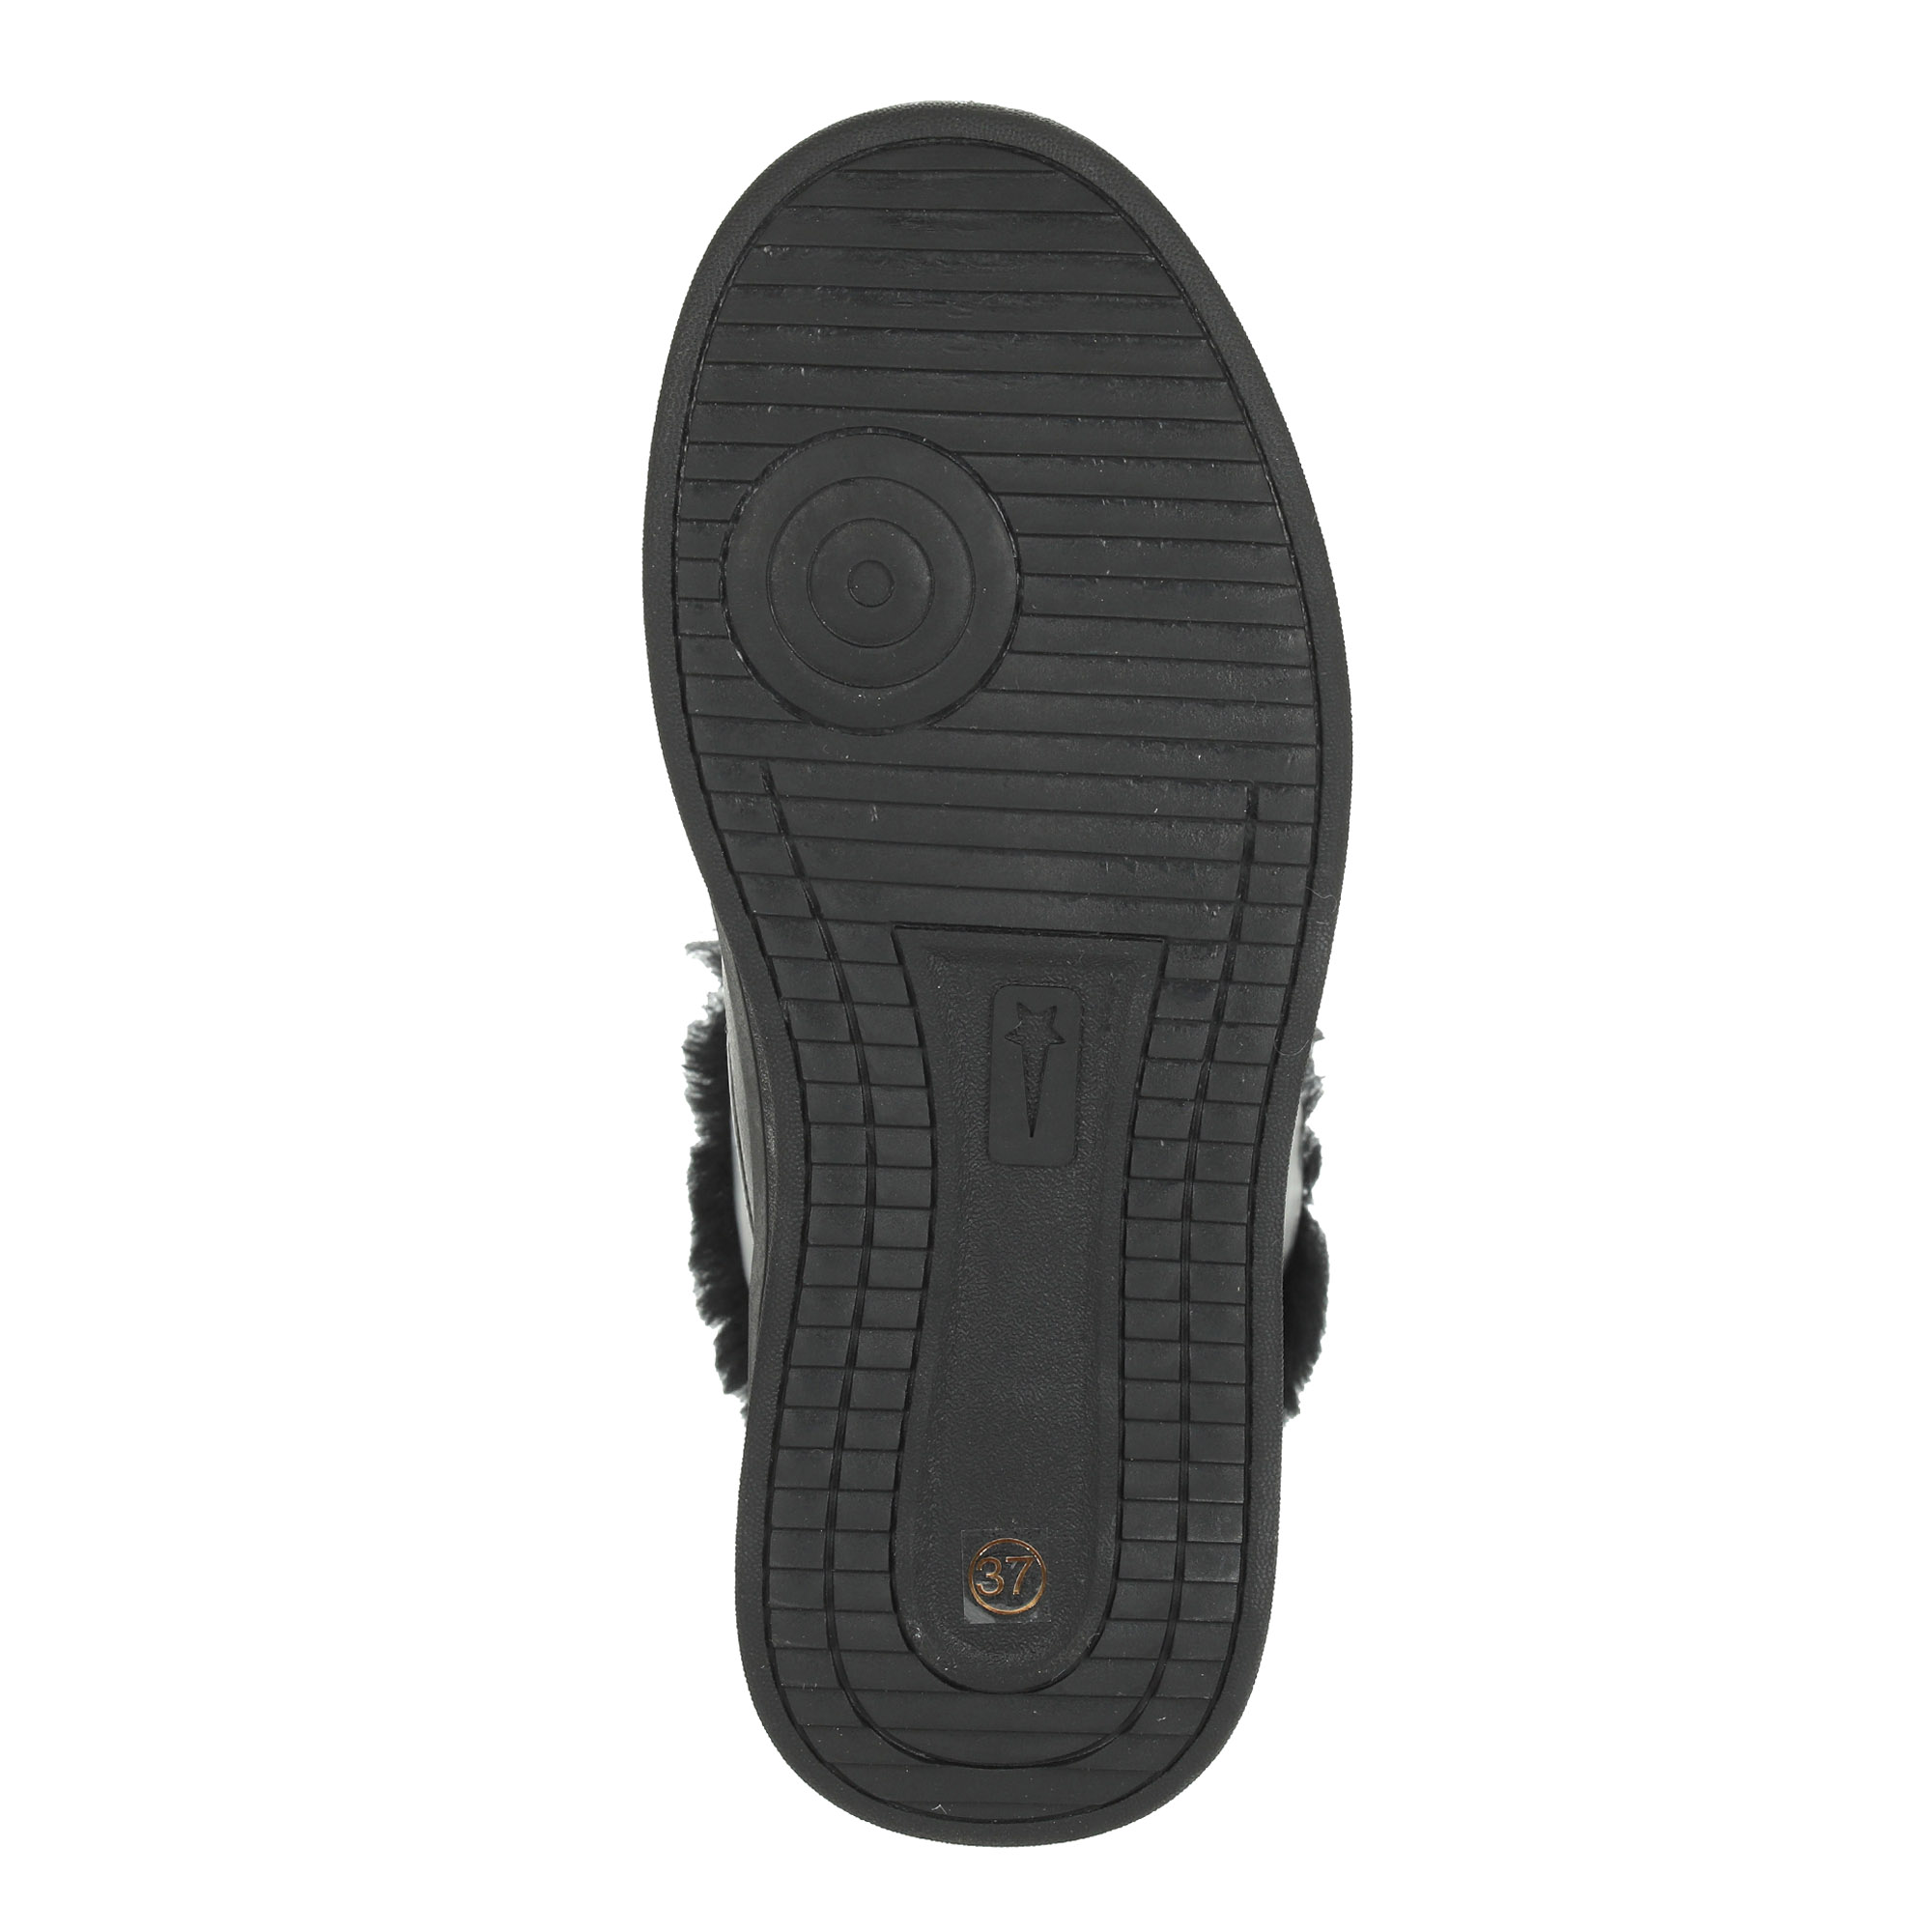 Черные высокие кроссовки из комбинированных материалов смеховой опушкой на подкладке из натуральной шерсти на утолщенной платформе Respect, размер 37, цвет черный - фото 8